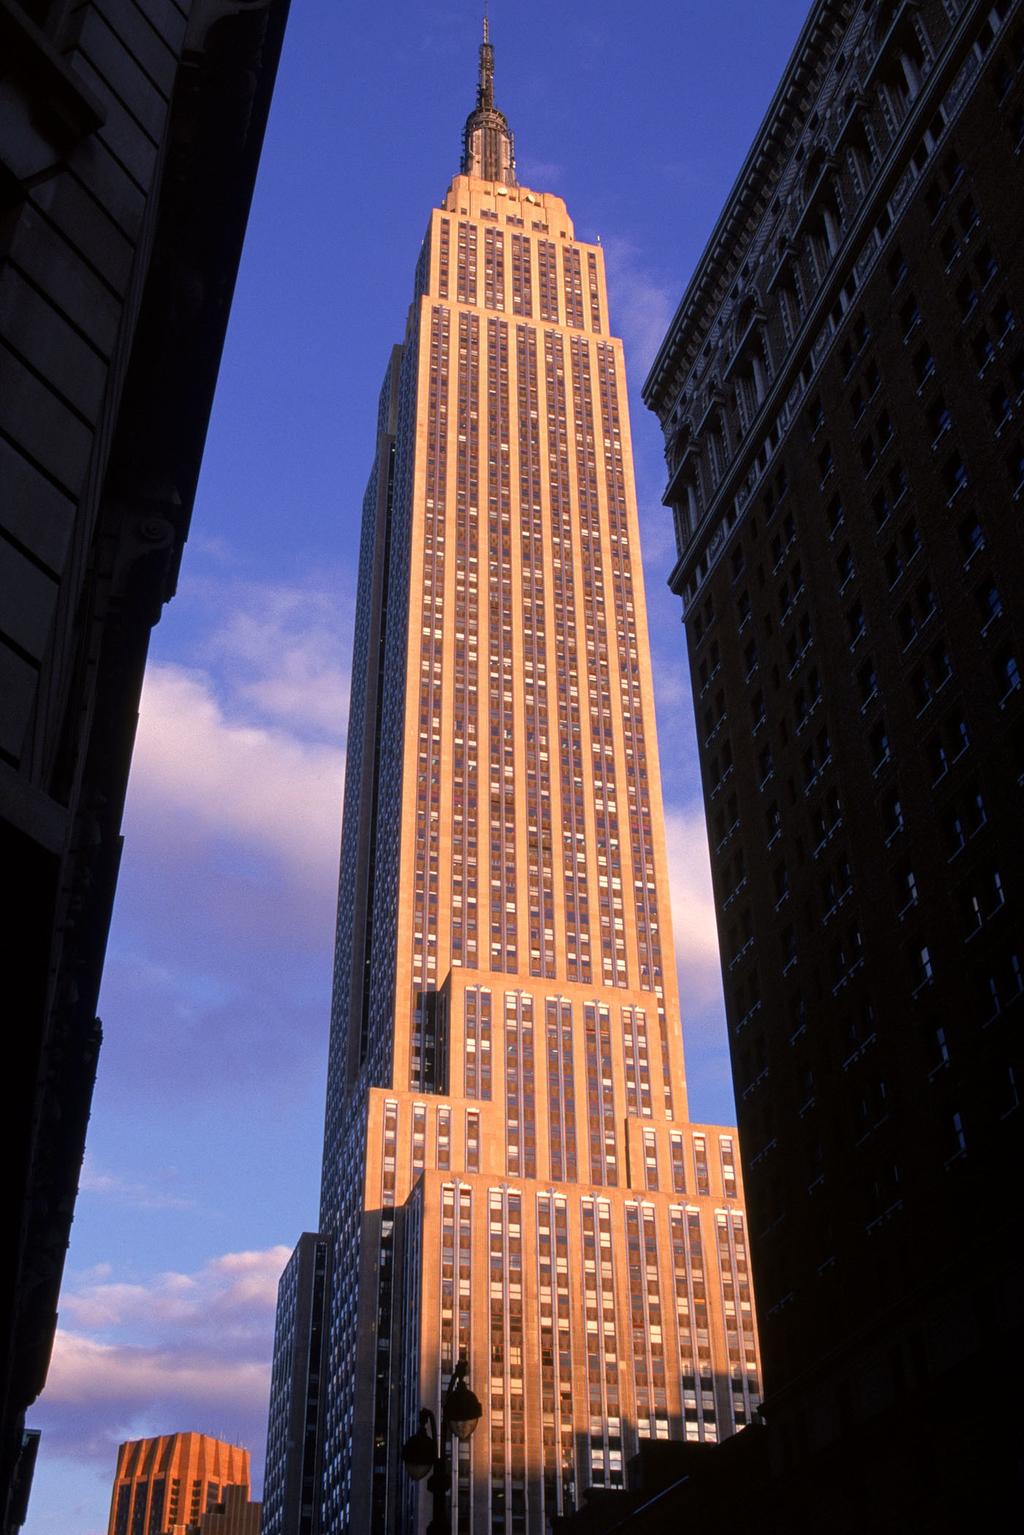 Opgave 9 Het Empire State Building is een hoge wolkenkrabber in New York. Stel je voor dat iemand van het 381 m hoge gebouw een steentje laat vallen!